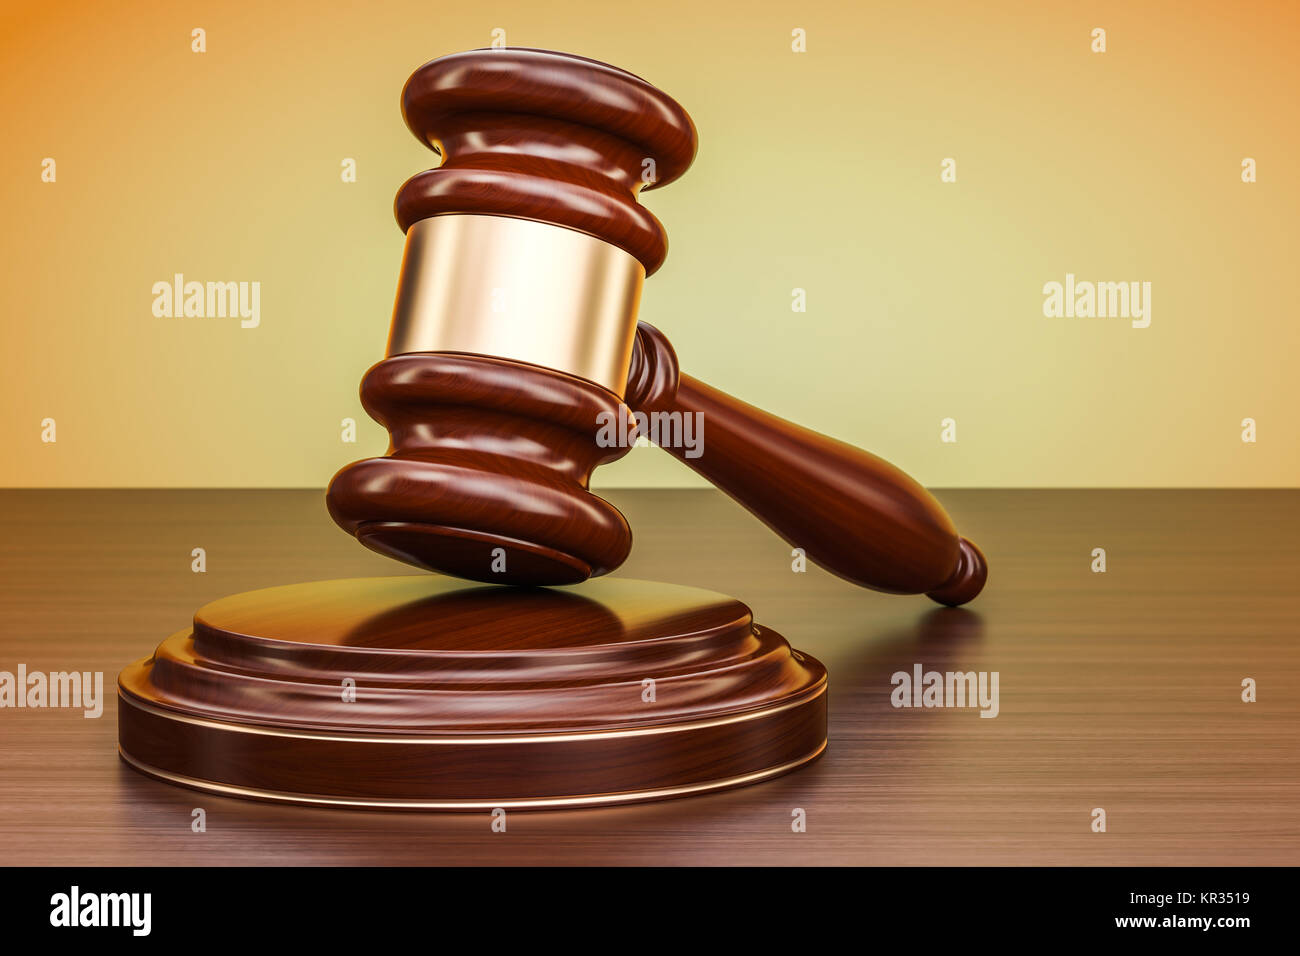 Gesetz und Gerechtigkeit Konzept. Holz- Hammer auf den Tisch, 3D-Rendering Stockfoto